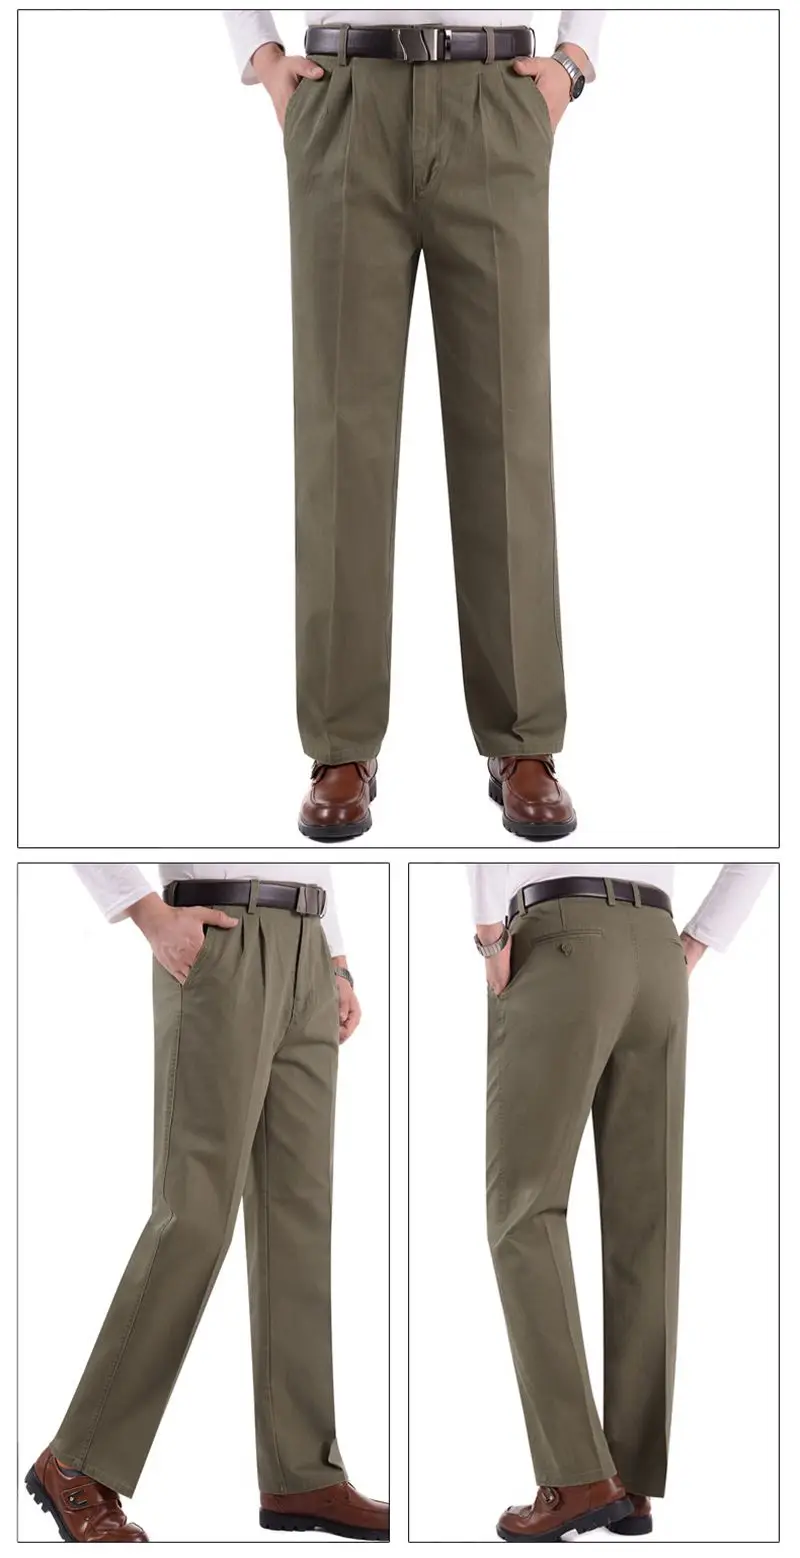 FAISIENS большой размер костюм брюки мужские 7XL 8XL 9XL брюки хлопок формальные деловые осенние зимние повседневные серые синие прямые брюки